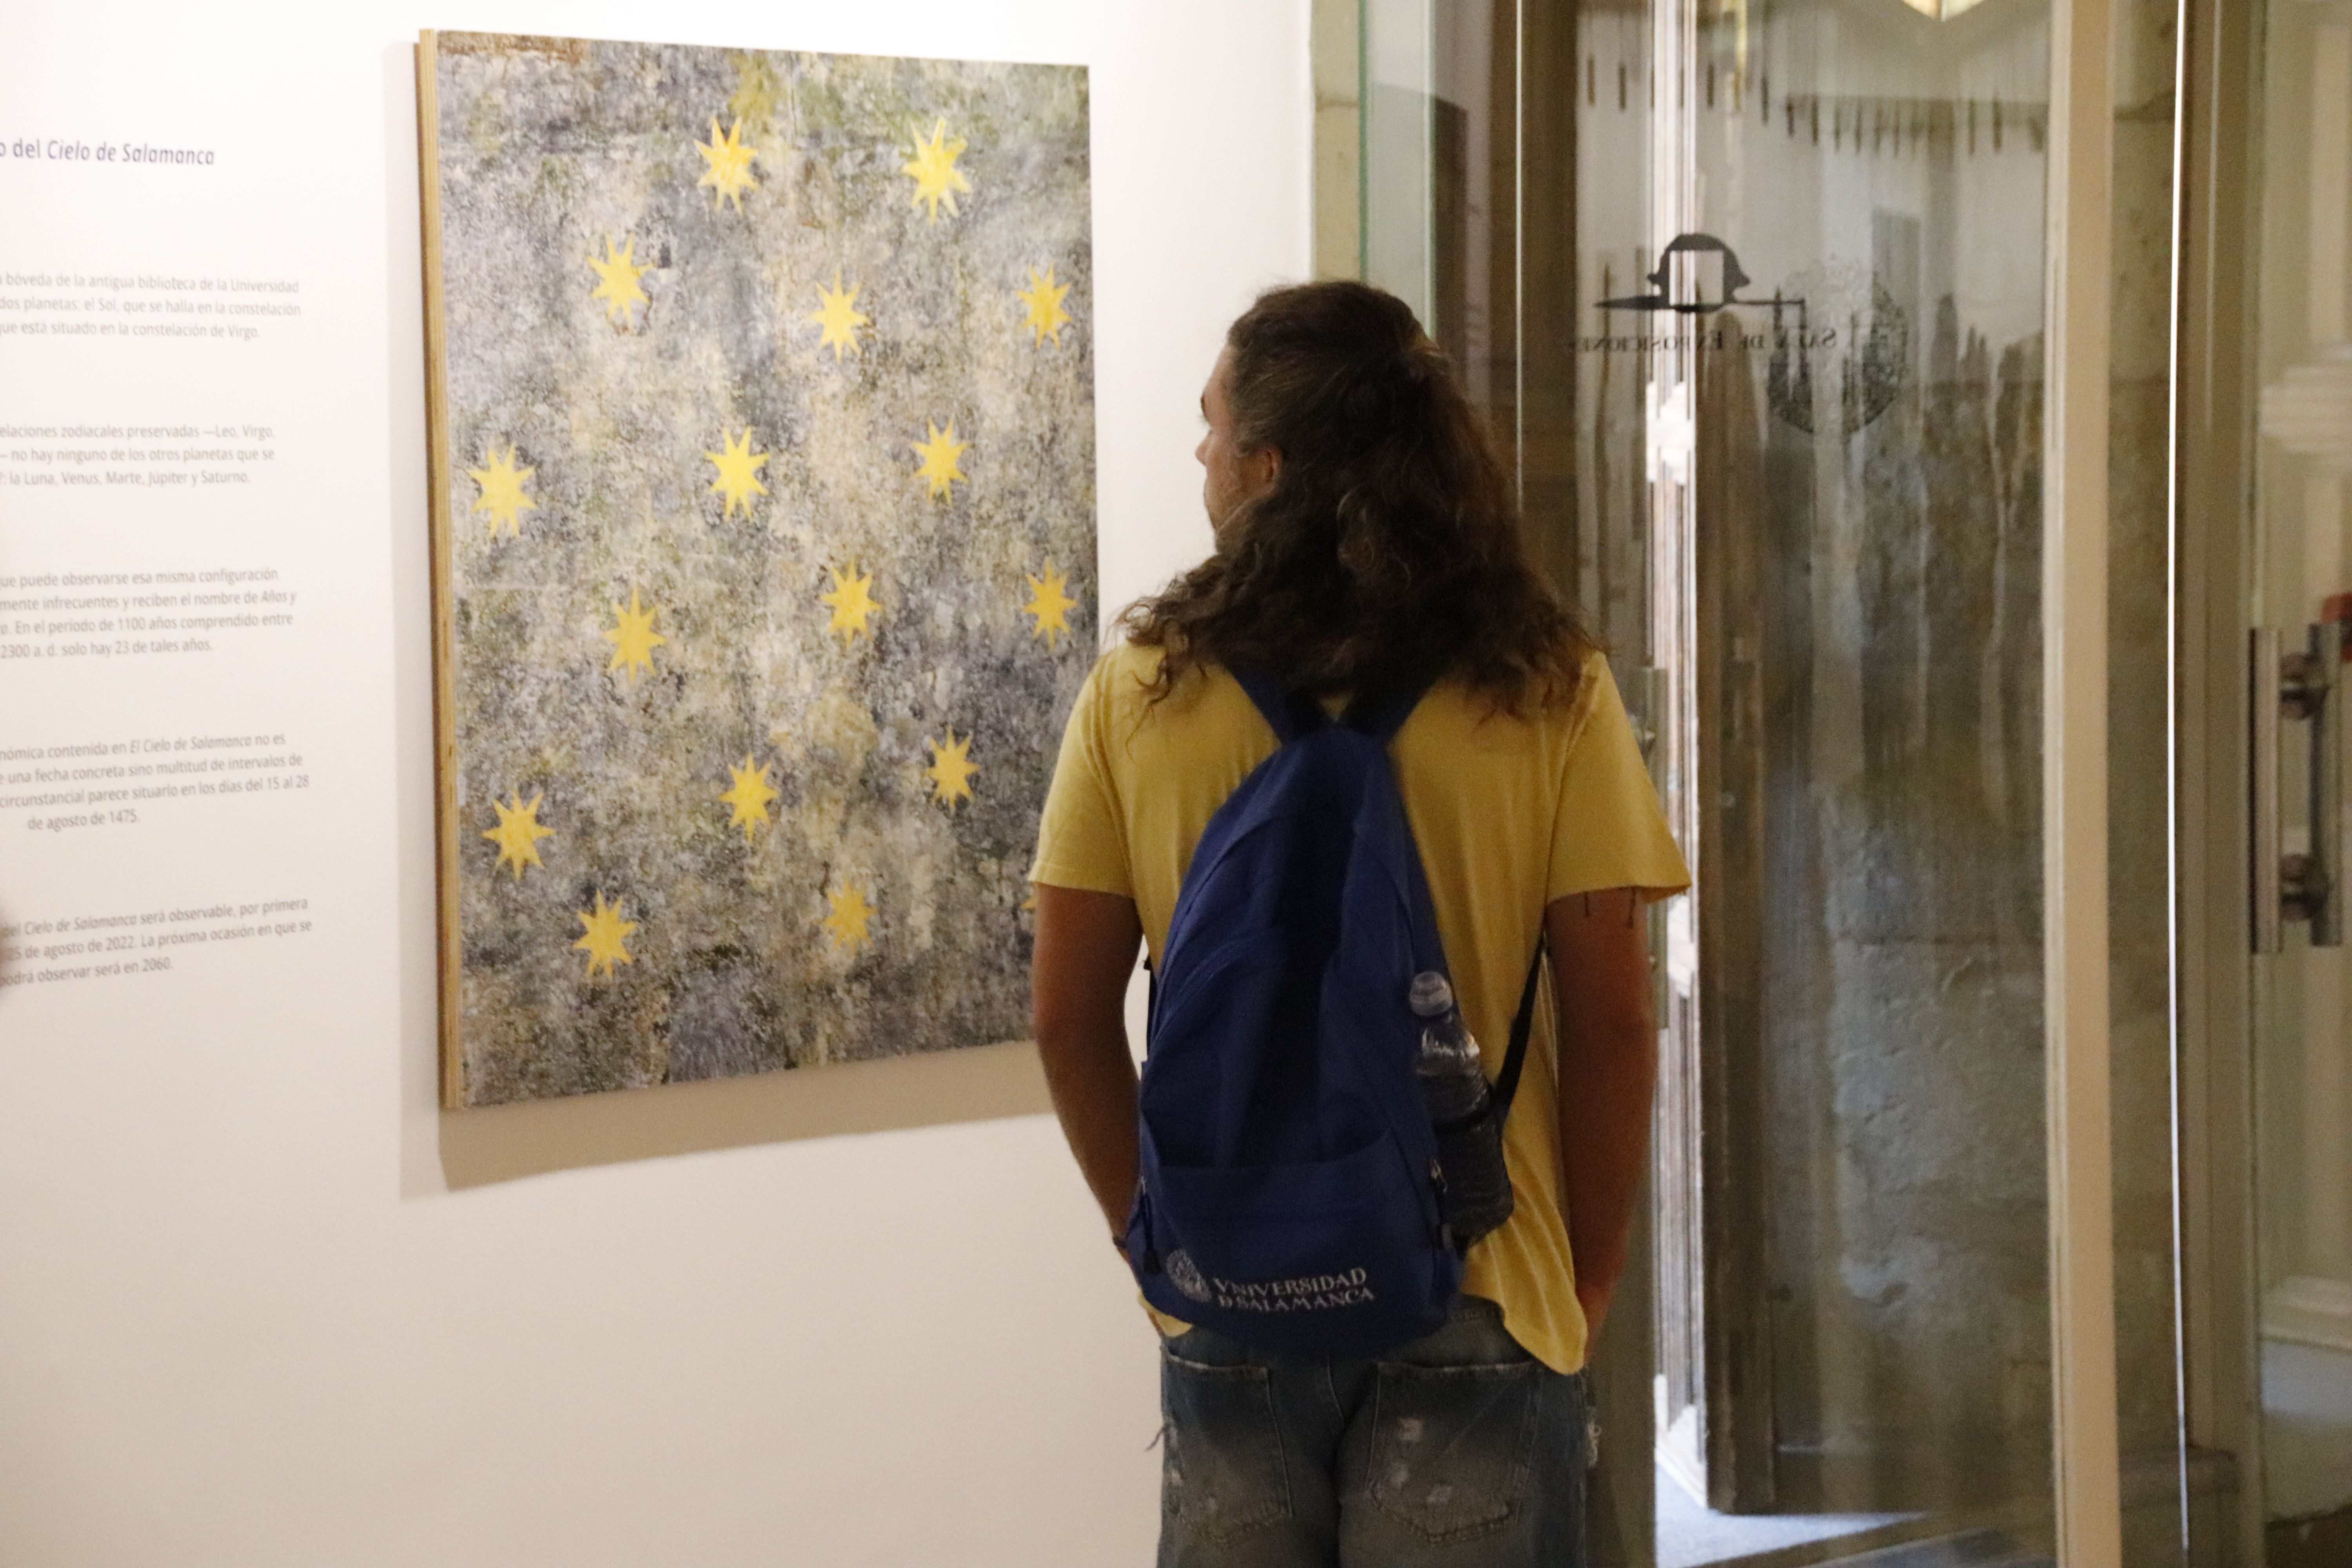 La Universidad de Salamanca inaugura la exposición ‘El retorno del Cielo de Salamanca (20)